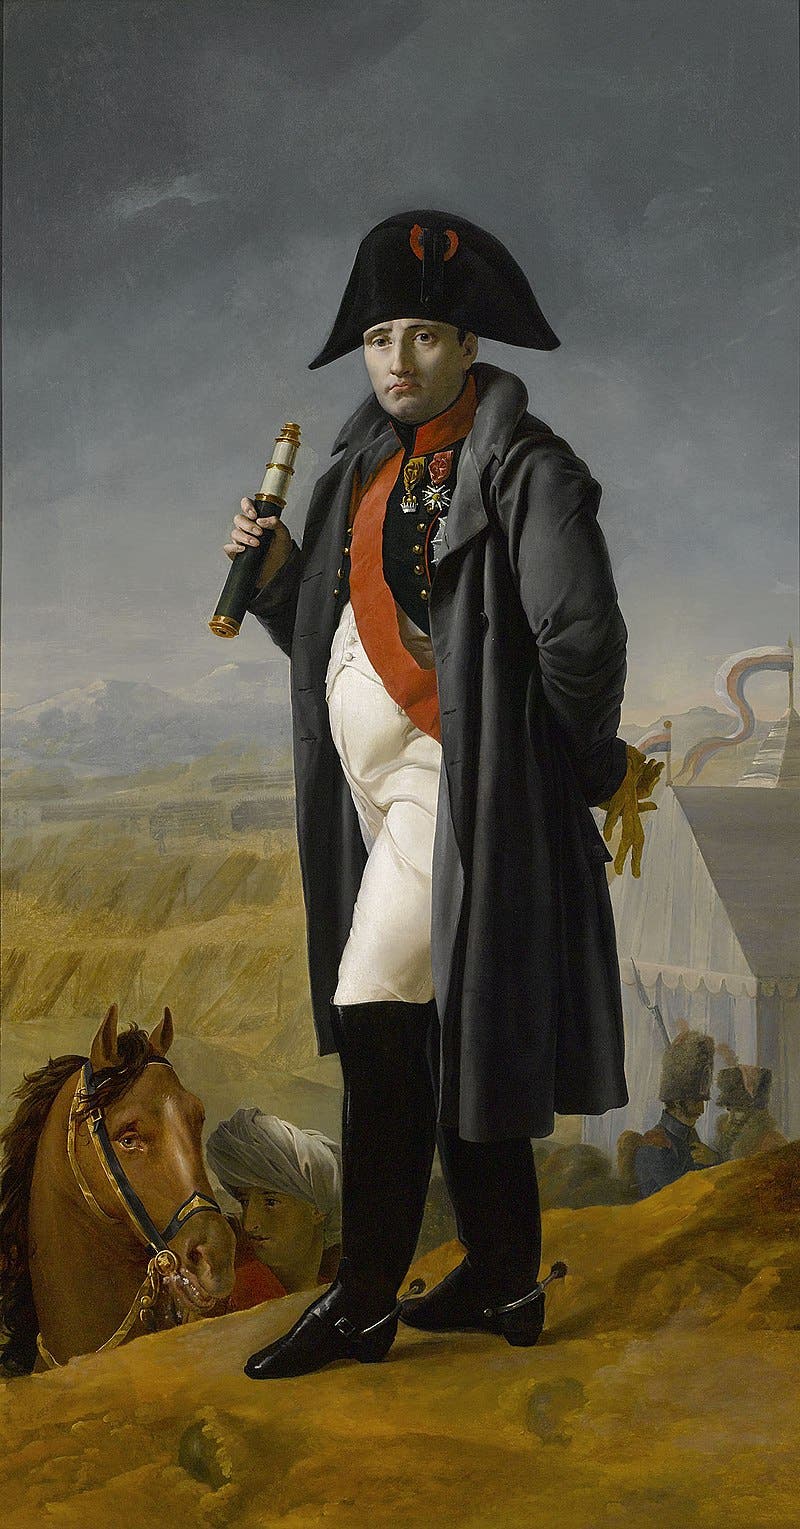 لوحة تجسد نابليون بونابرت قبل معركة بورودينو